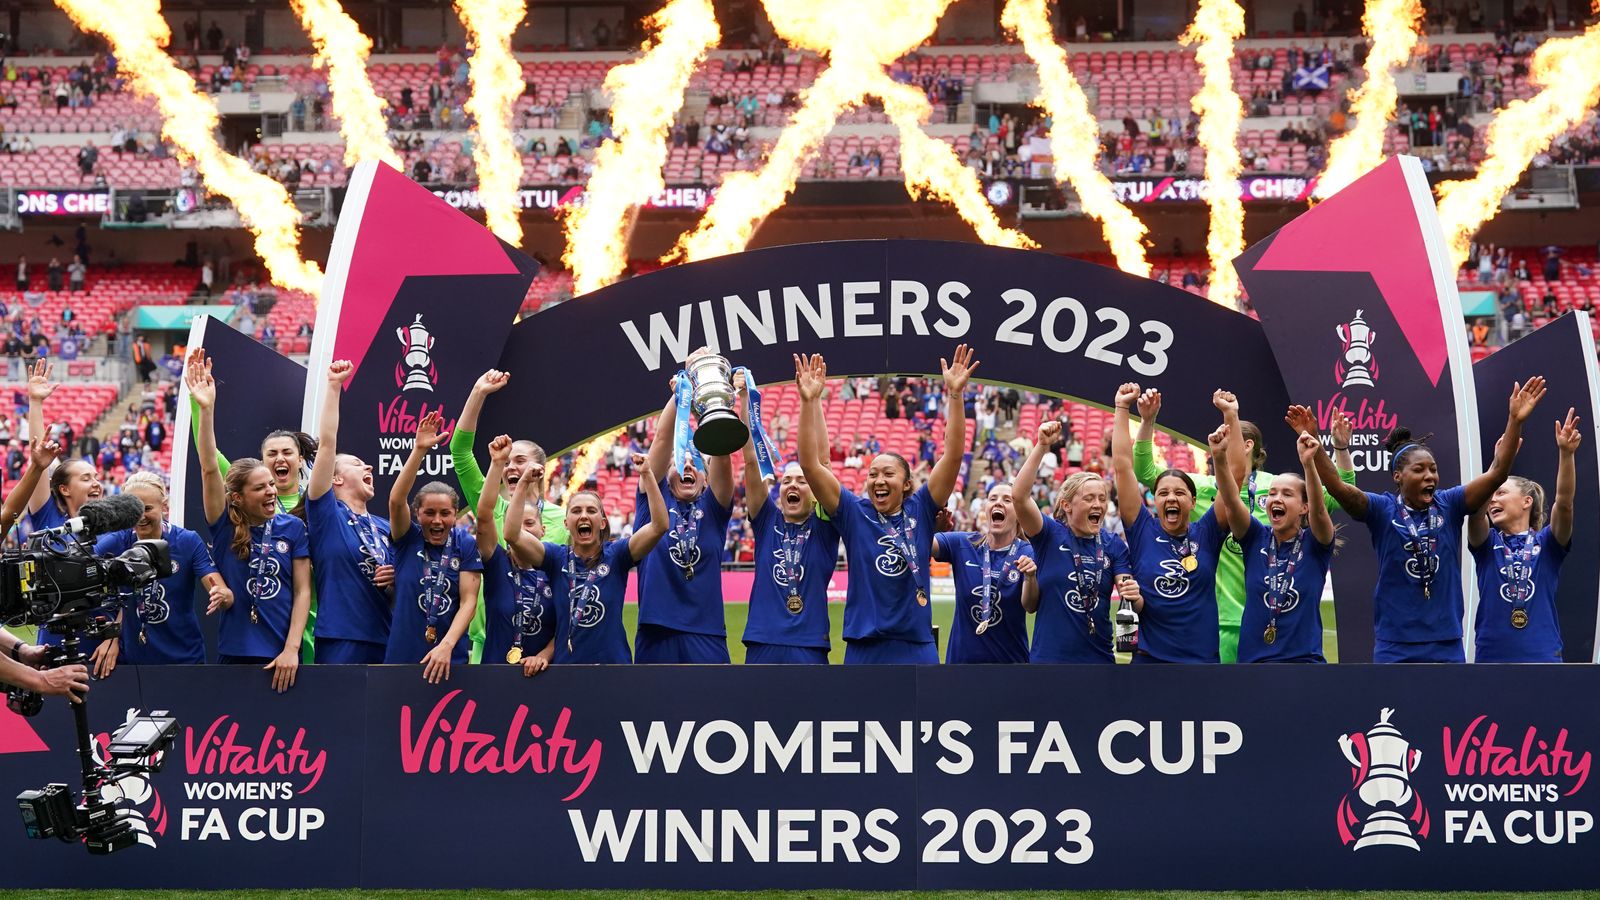 Das FA-Cup-Finale der Frauen zieht Weltrekord-Zuschauer an, da Chelsea Manchester United besiegt |  Britische Nachrichten